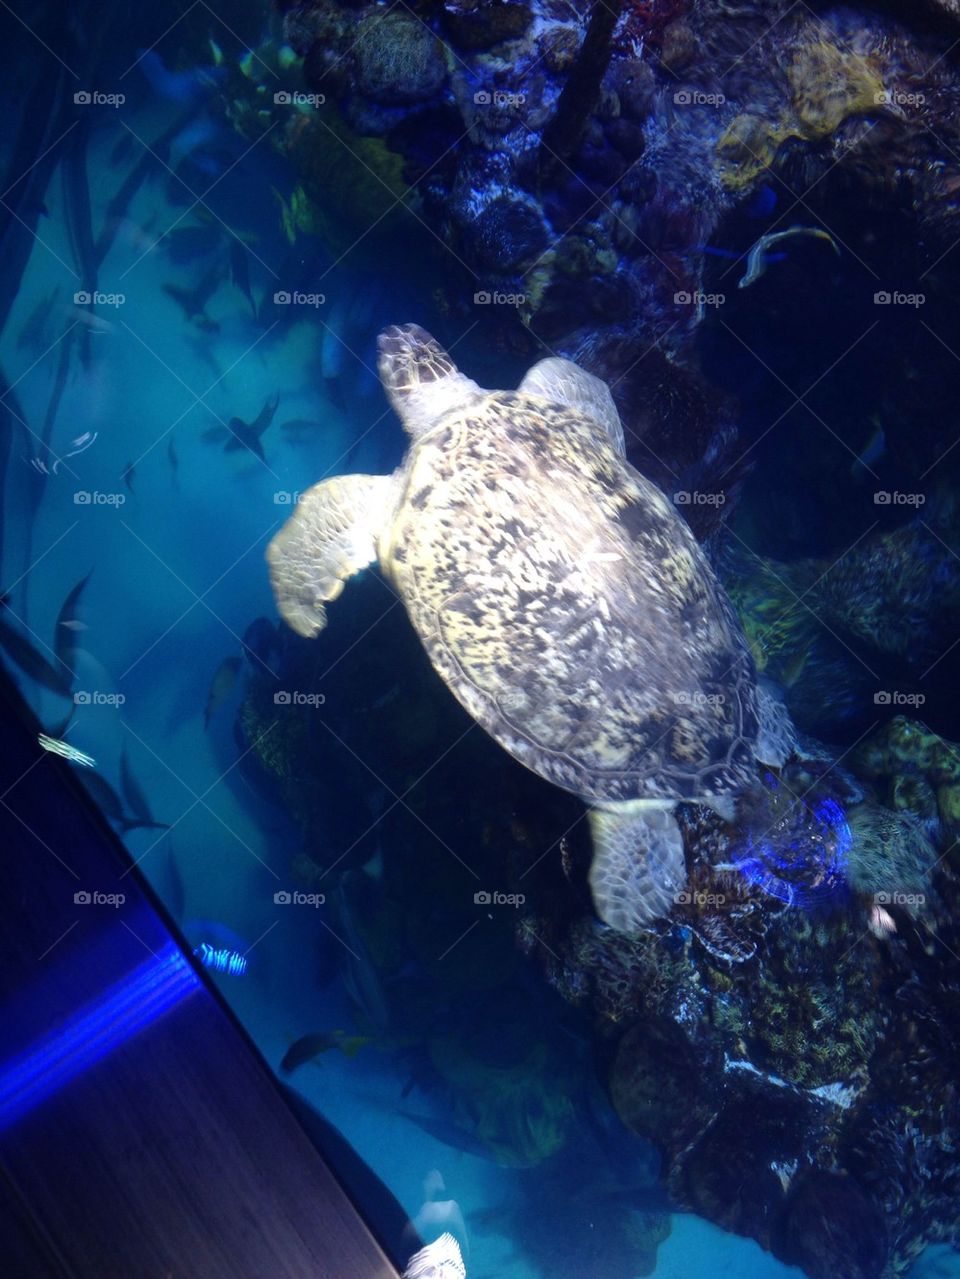 Aquarium Adventures. Sea turtle at the Boston Aquarium.